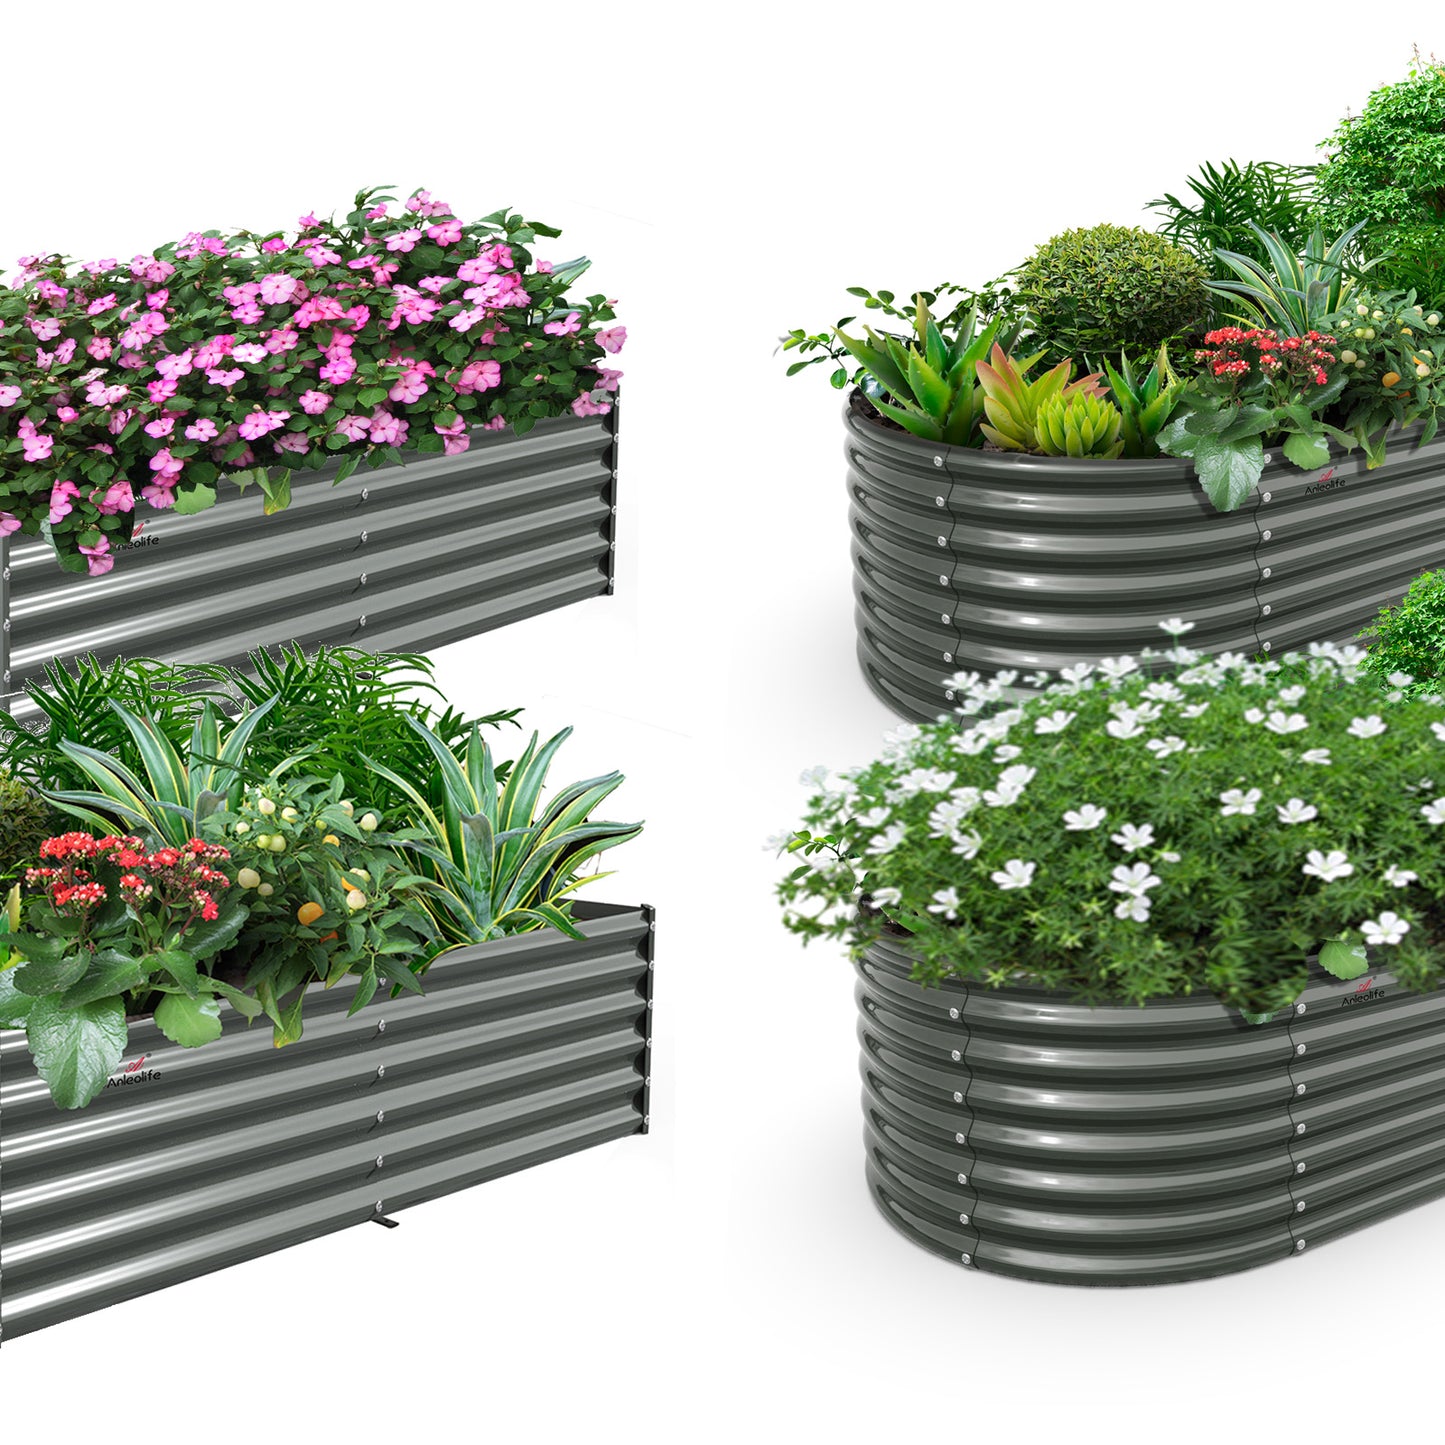 Set of 4: Oval and Rectangular Modular Metal Raised Garden Beds (Grey)